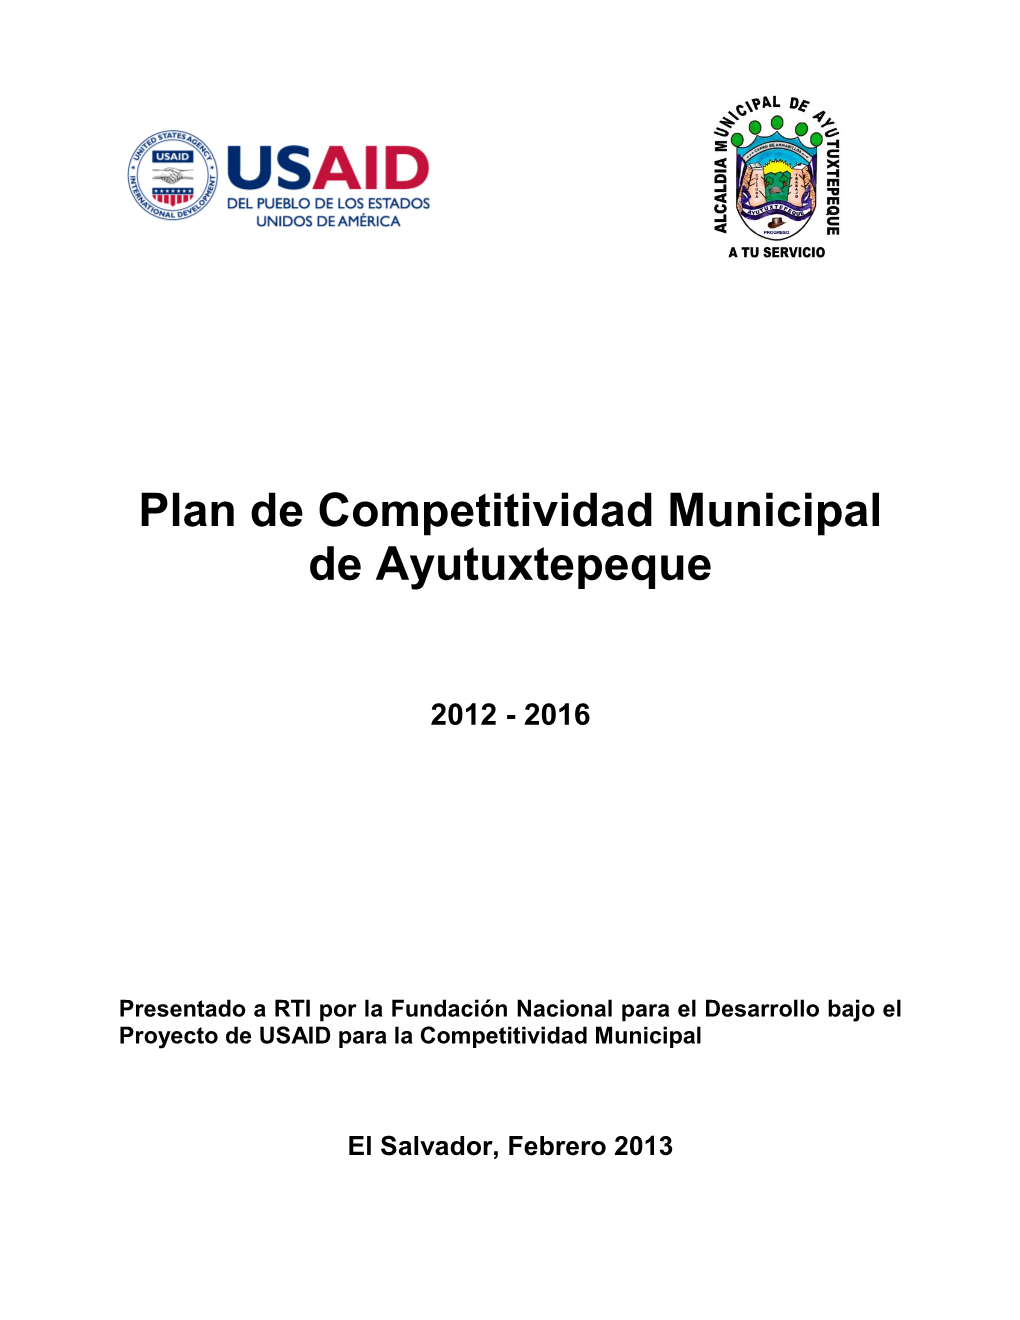 Plan De Competitividad Municipal De Ayutuxtepeque